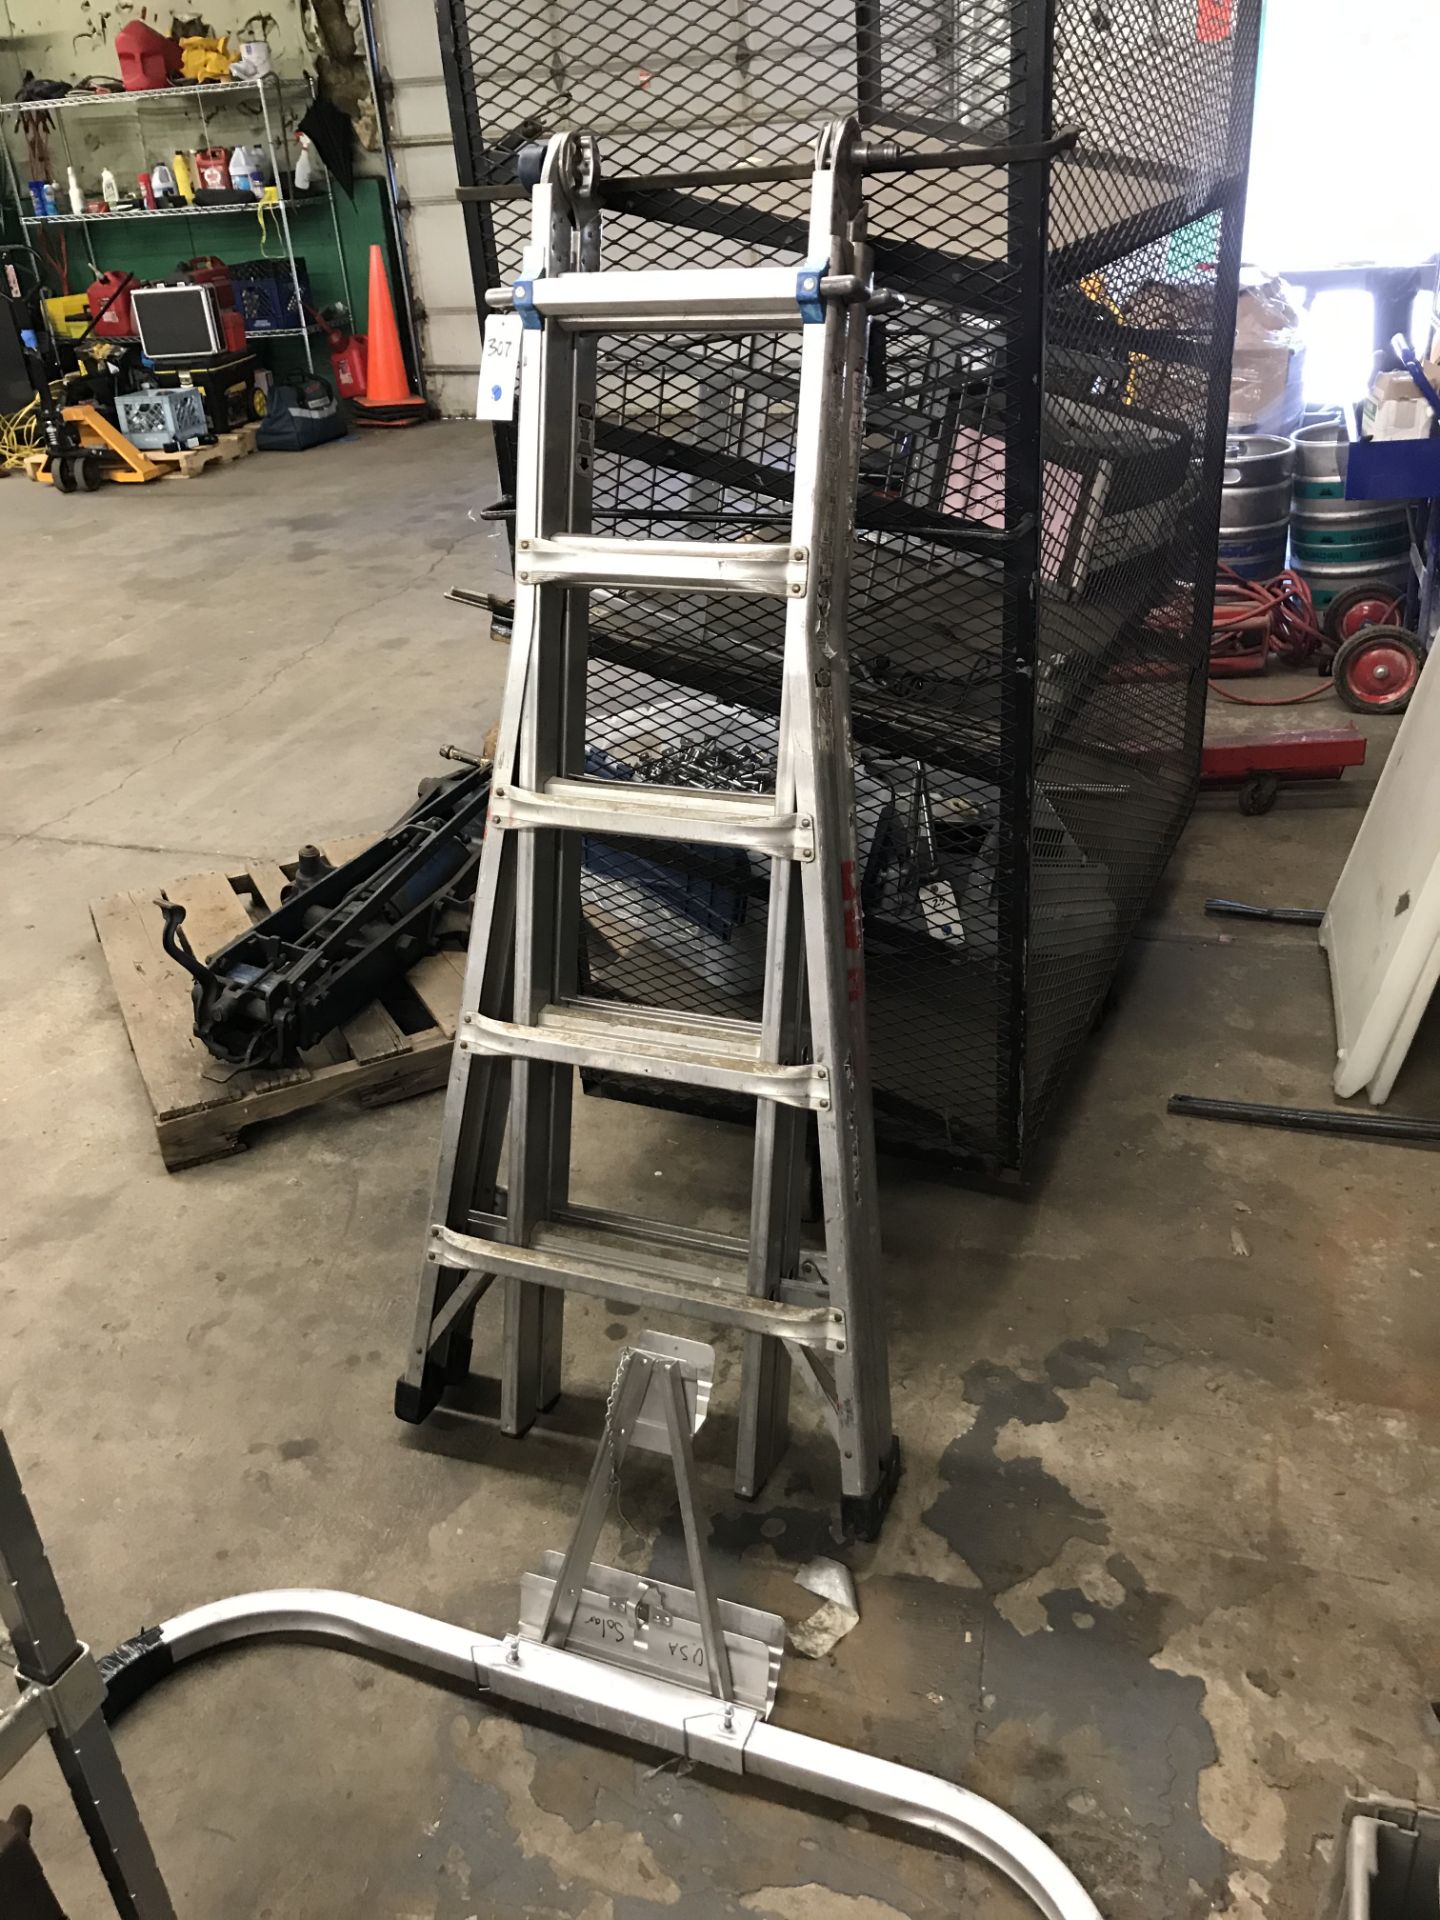 Werner Extension Ladder